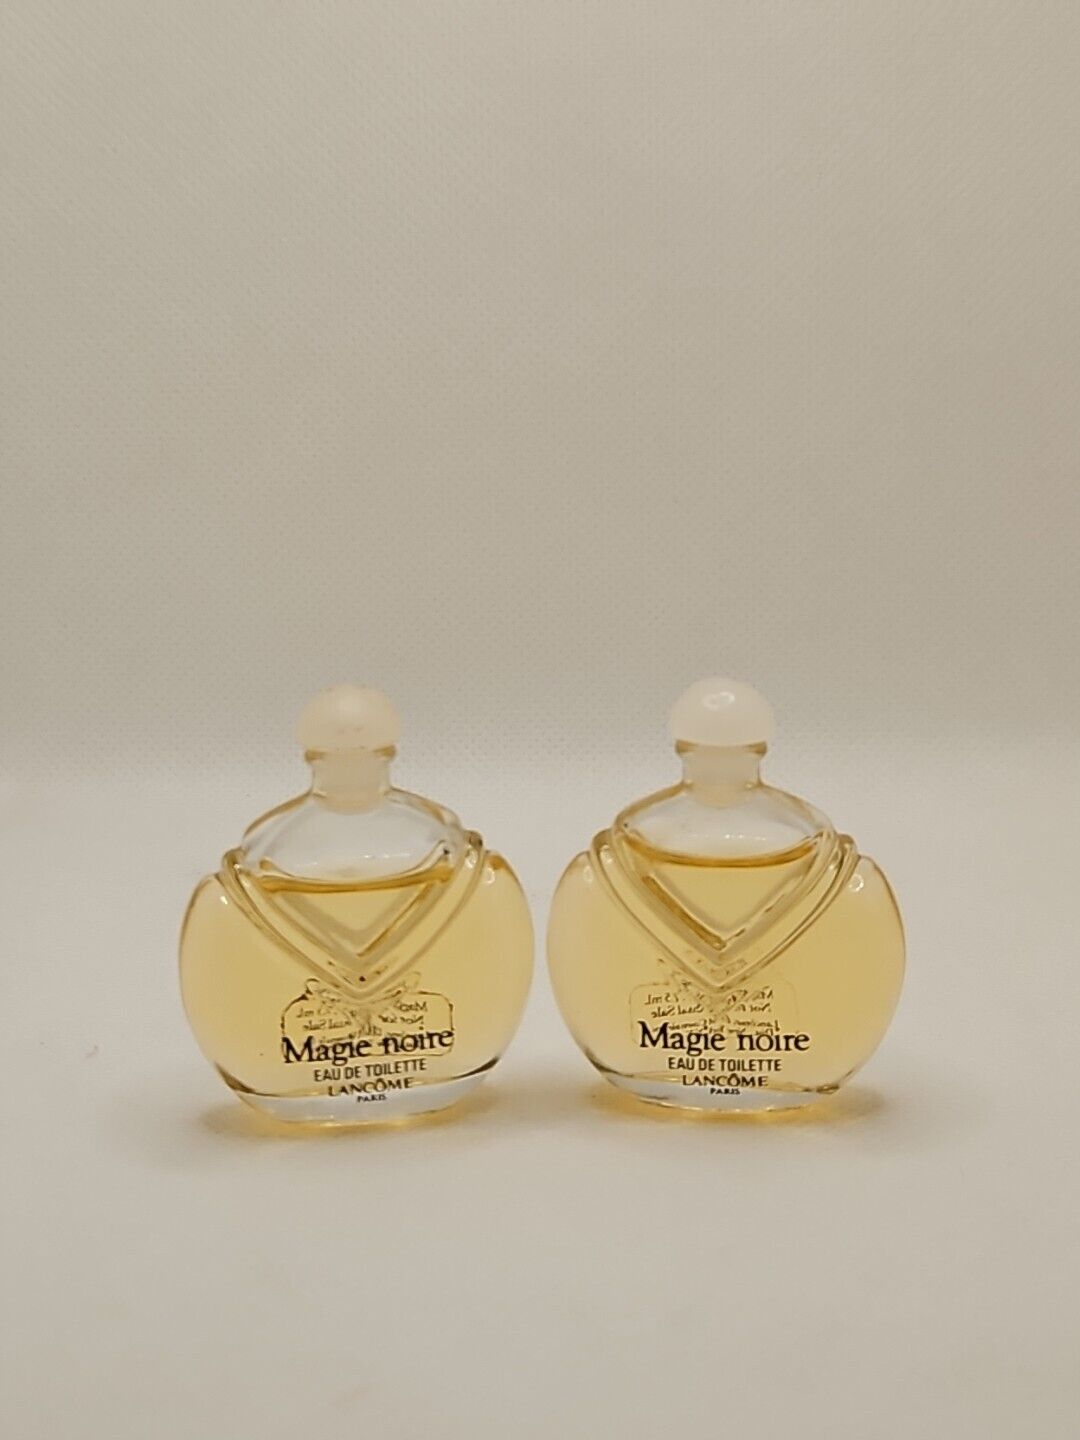 2 Magic Noire Lancome Paris Mini Splash Perfume Vintage. 7.5 Ml Bottle.